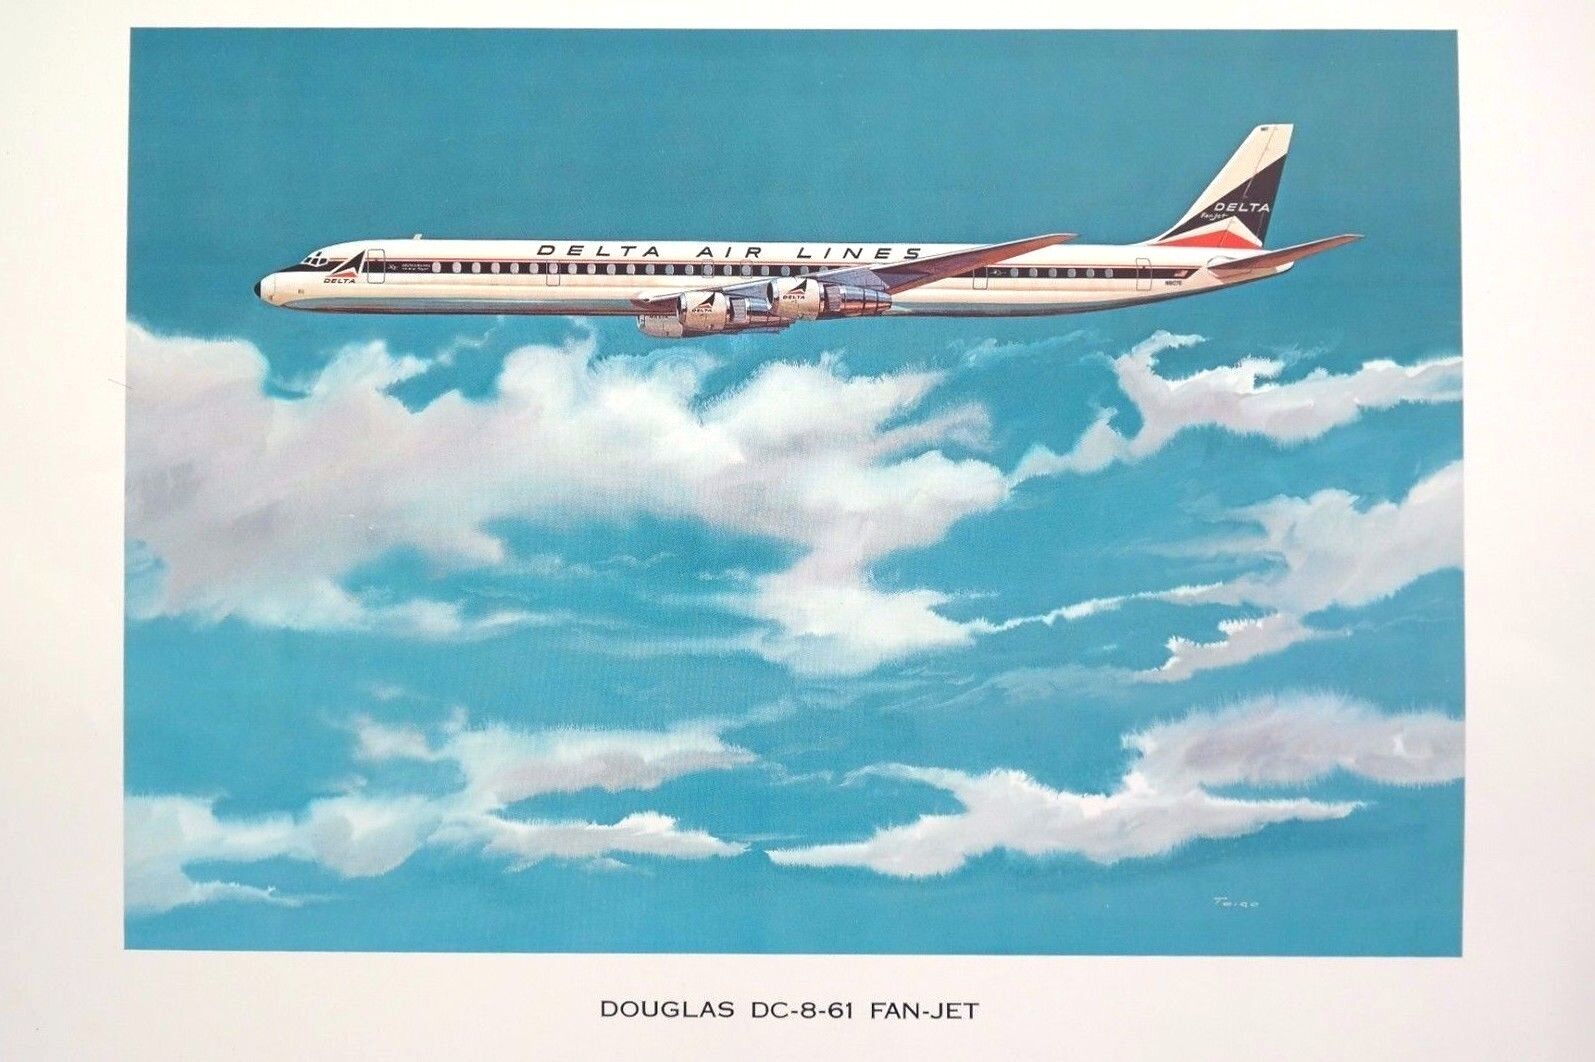 Vtg June 1967 DELTA AIRLINES Douglas DC-8-61 Fan Jet POSTER / PRINT 16X20